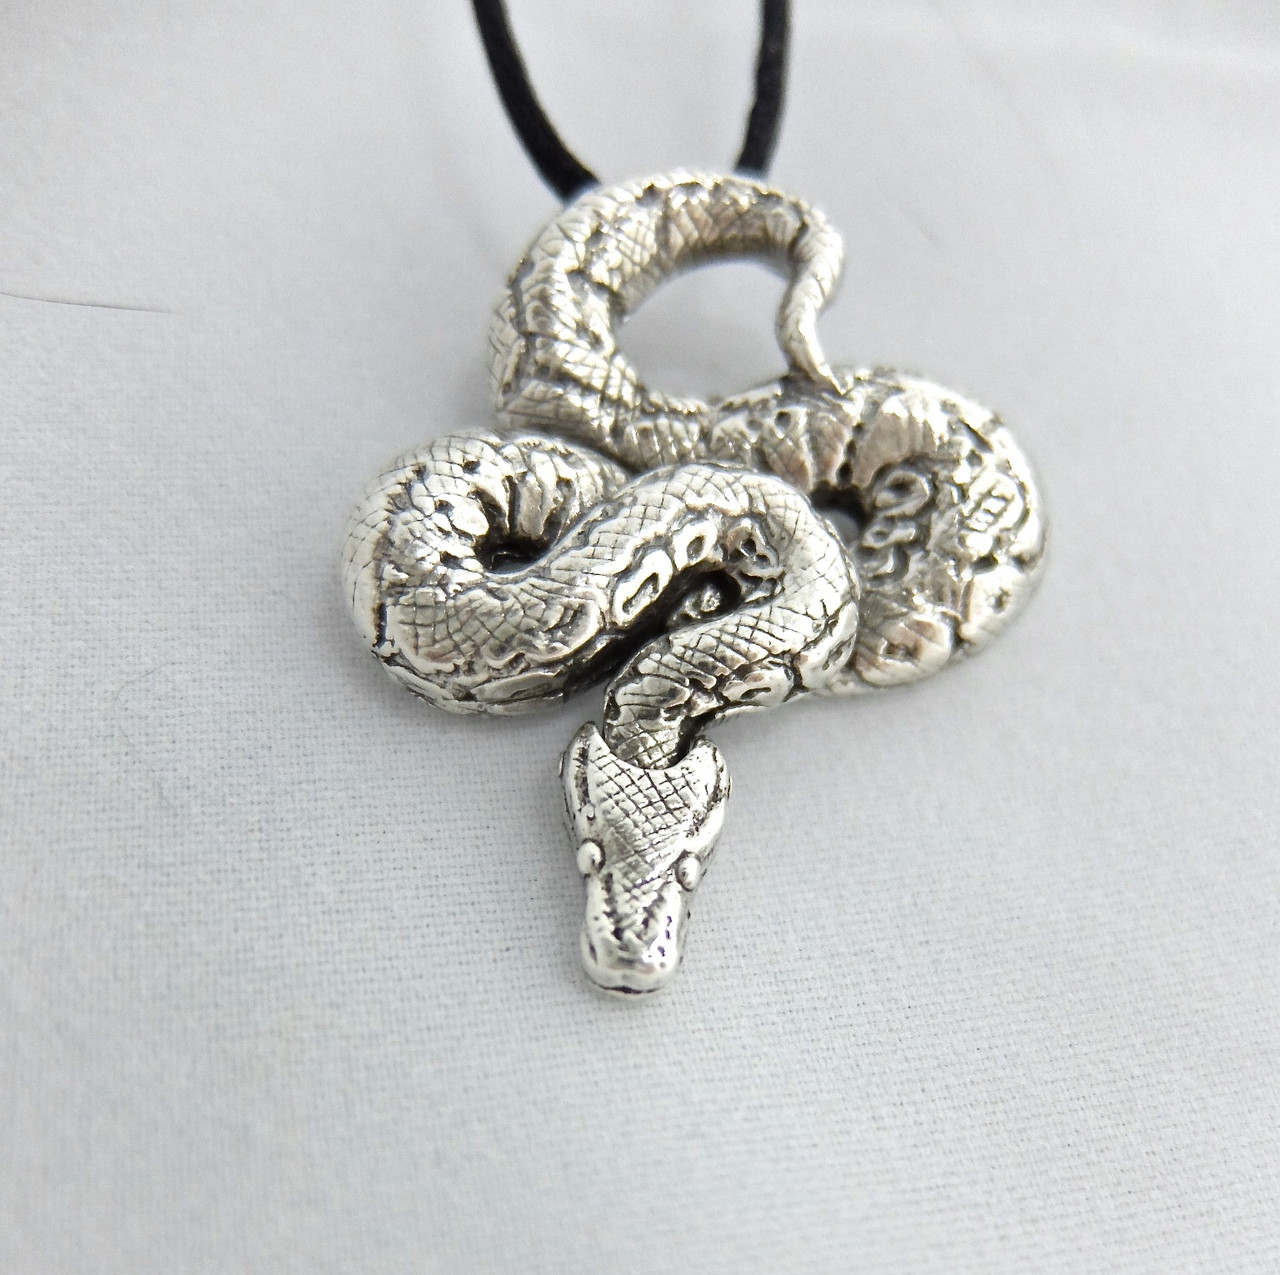 Boa Snake Pendant